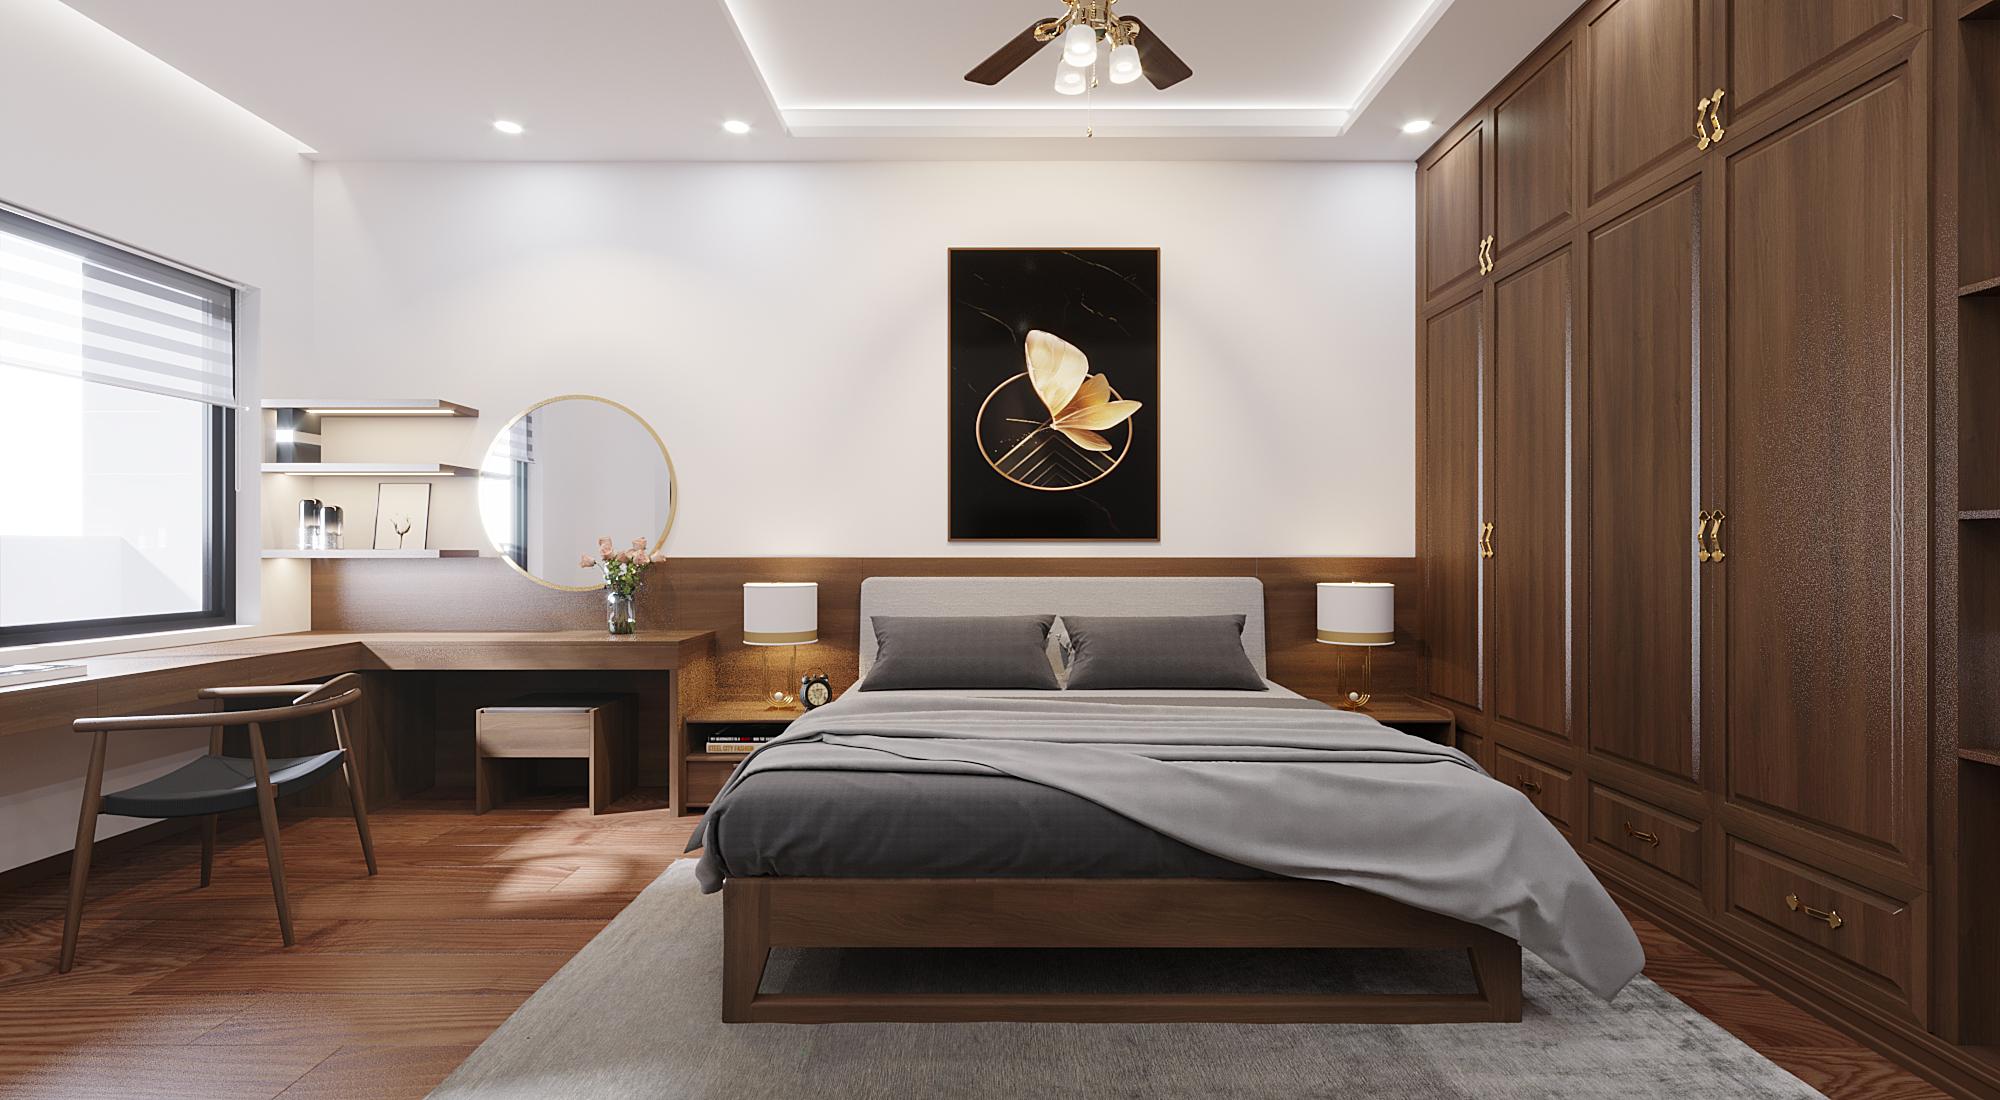 Phòng ngủ master giản đơn với chất liệu chủ đạo vẫn là giả gỗ tự nhiên.